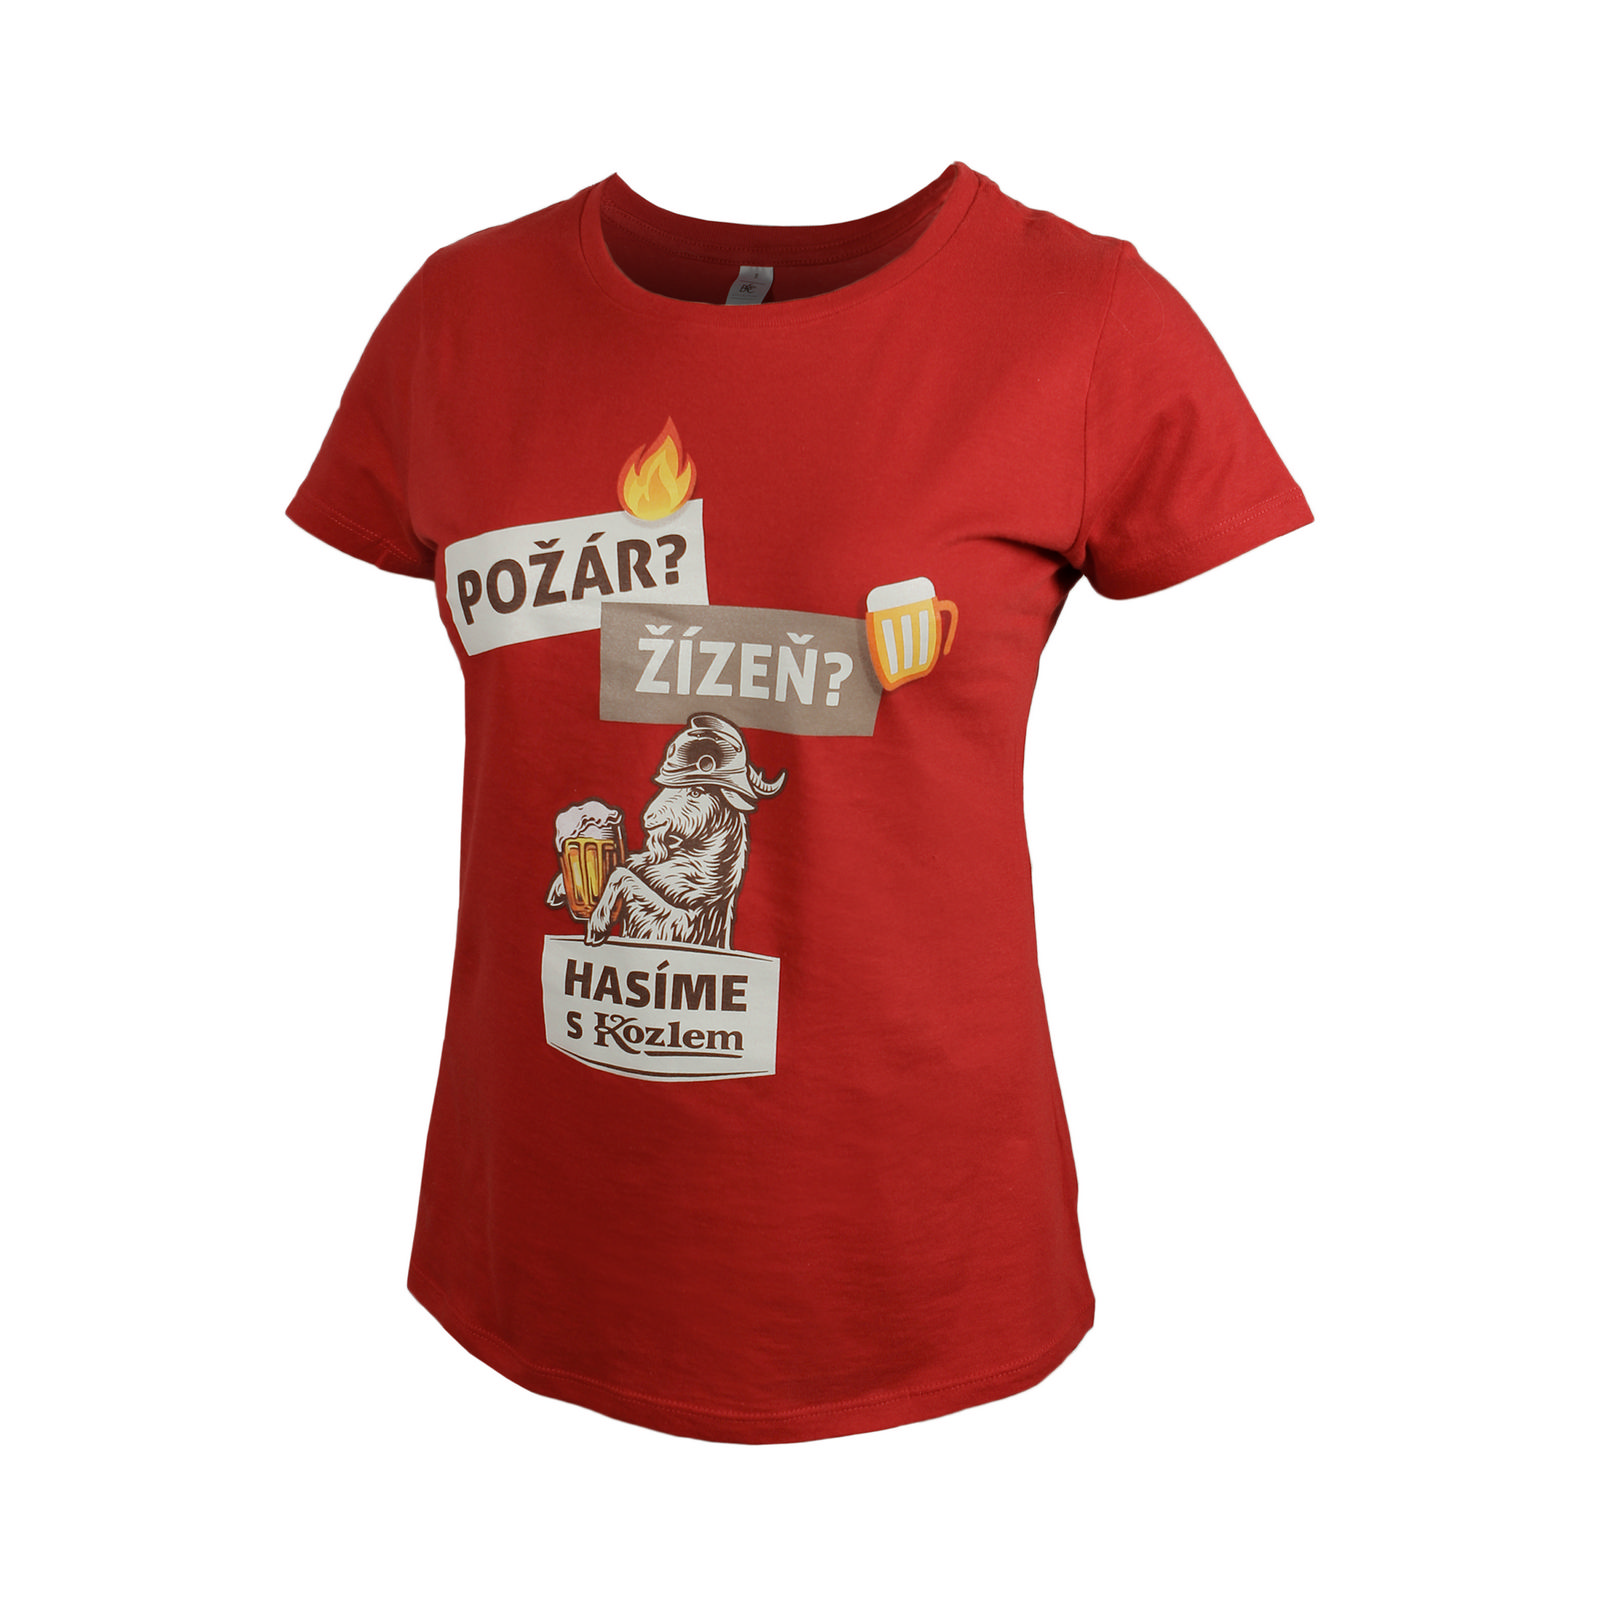 Damen T-Shirt Feuerwehrmann Kozel rot